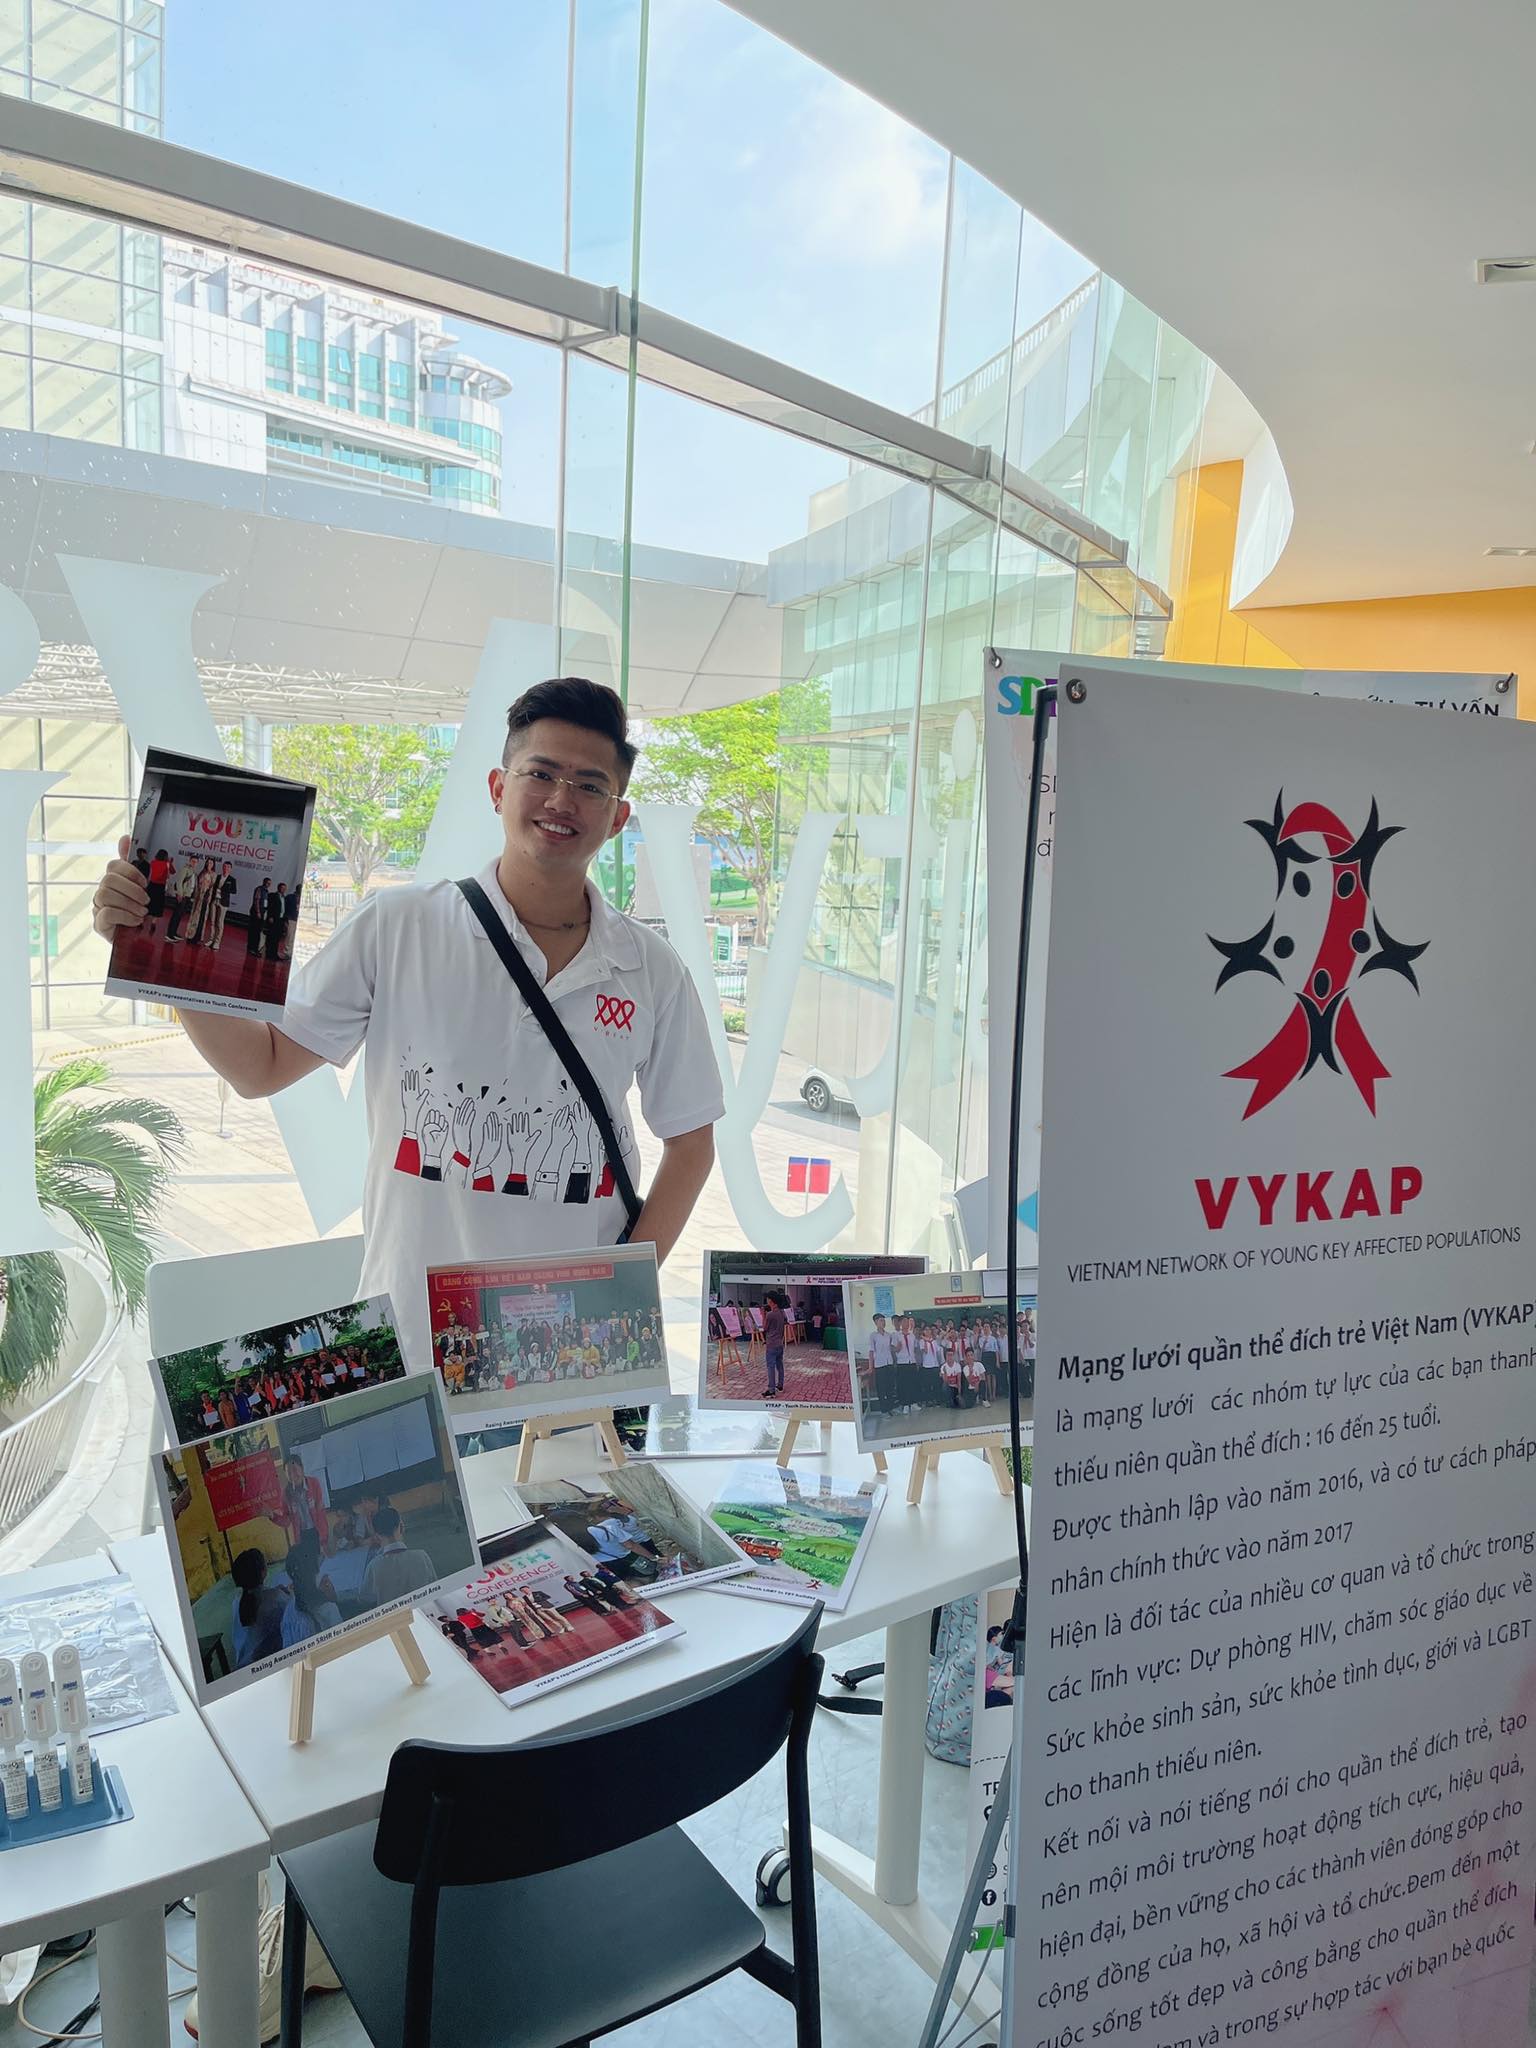  Mạng lưới quần thể đích trẻ Việt Nam (Vietnam Network Of Young Key Affected Populations - VYKAP) với nhiều hoạt động ý nghĩa kết nối các bạn trẻ LGBT - Ảnh: VUTT Décor